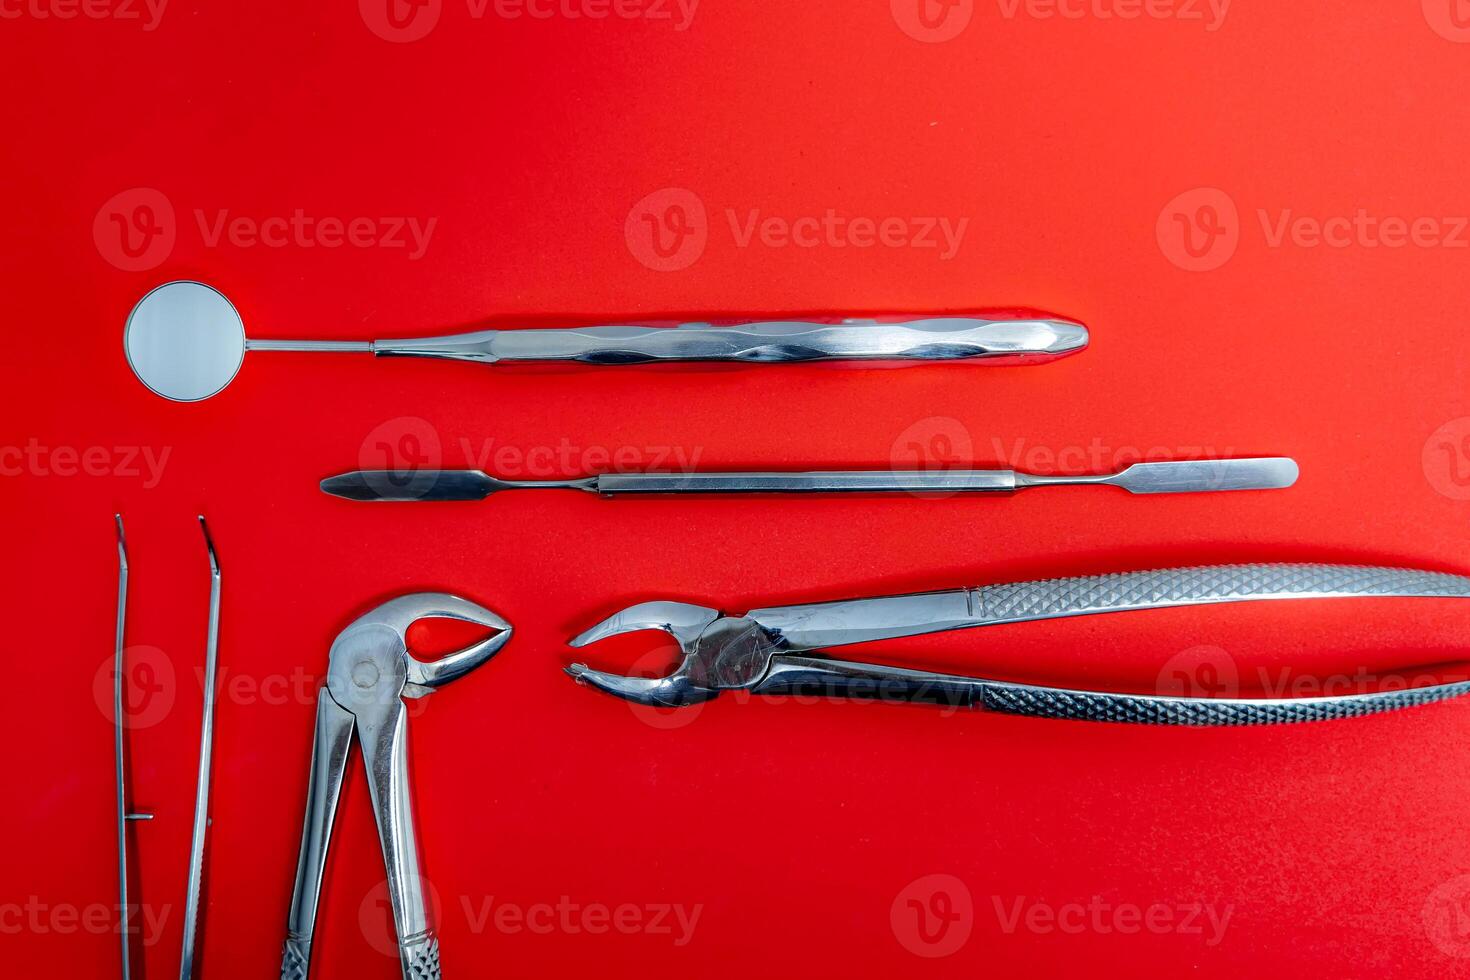 Arte foto para dental concepto. conjunto de metal dental instrumentos en rojo antecedentes.